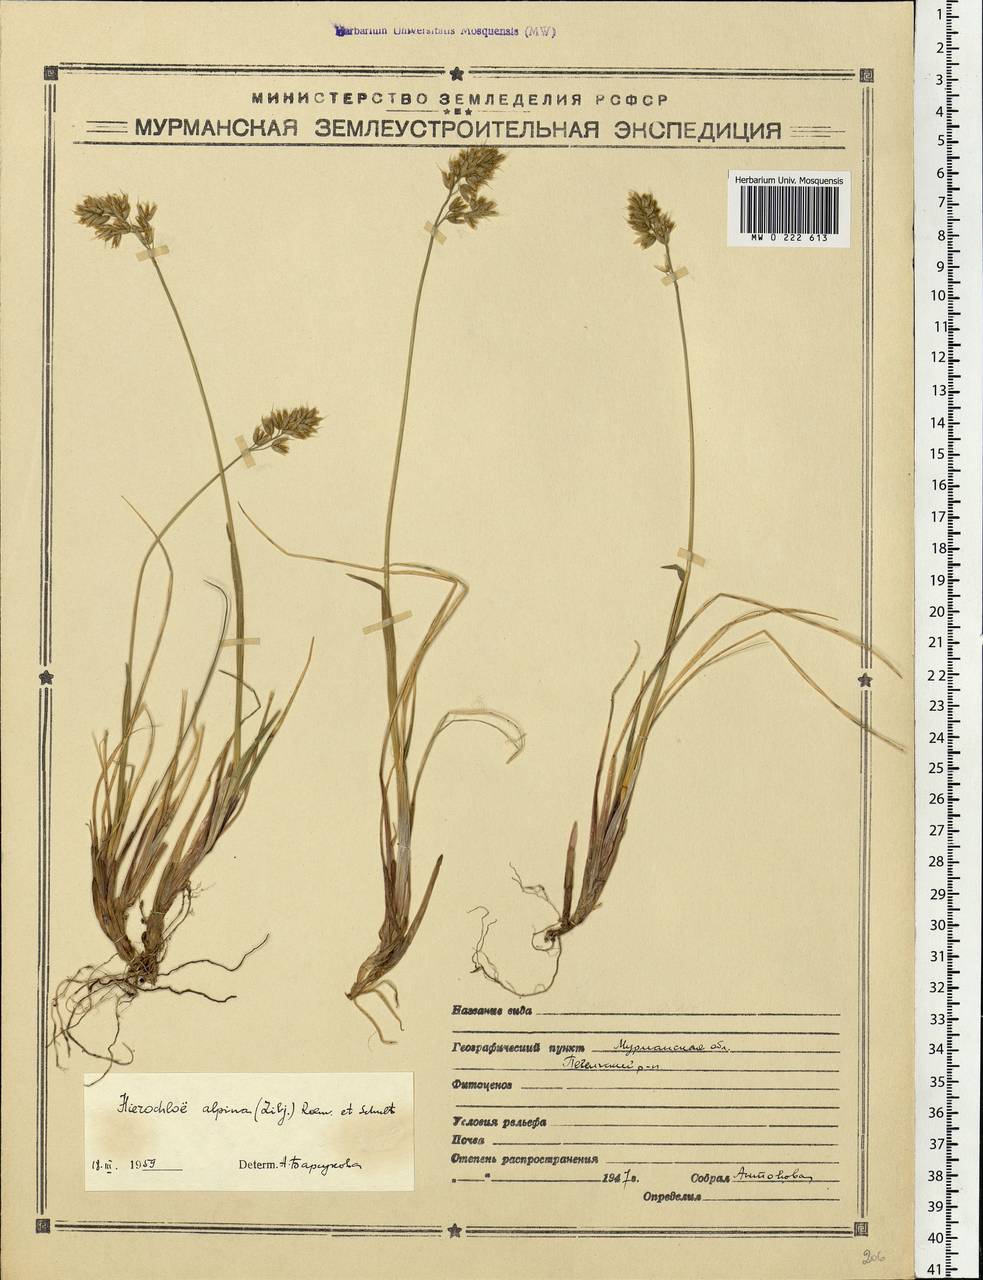 Anthoxanthum monticola (Bigelow) Veldkamp, Восточная Европа, Северный район (E1) (Россия)